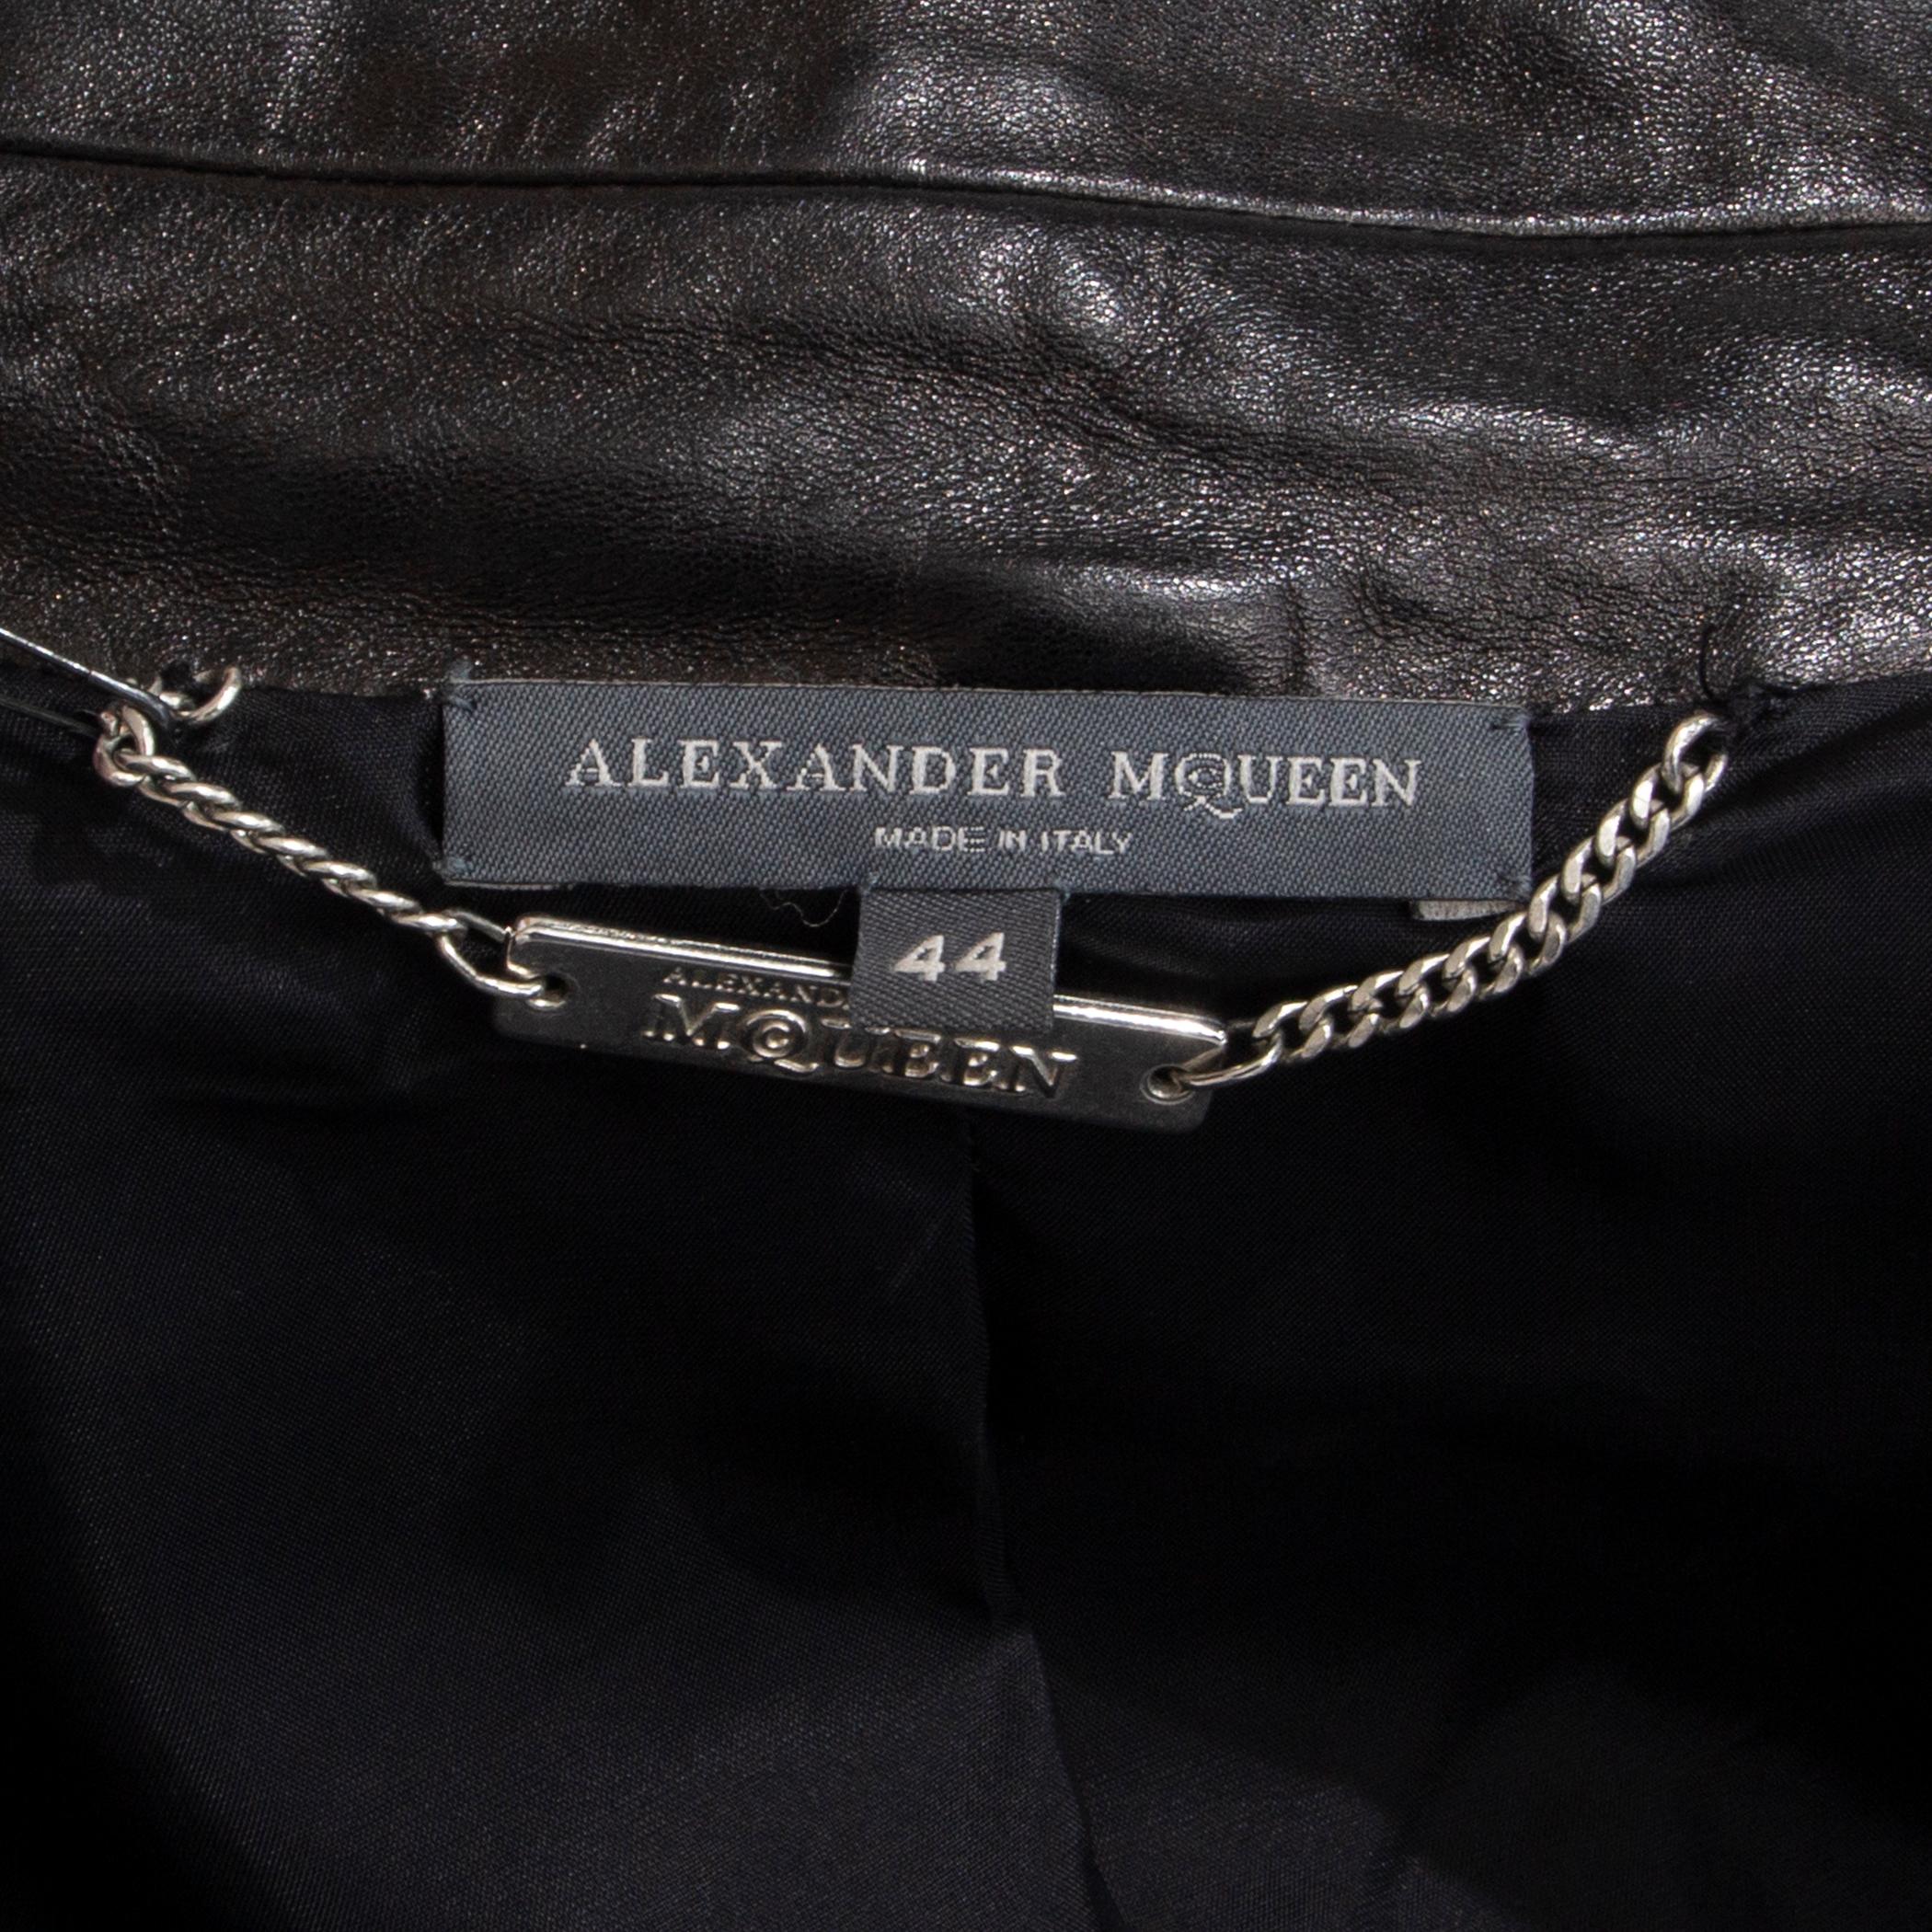 Women's Alexander McQueen black leather Trench Coat Jacket 44